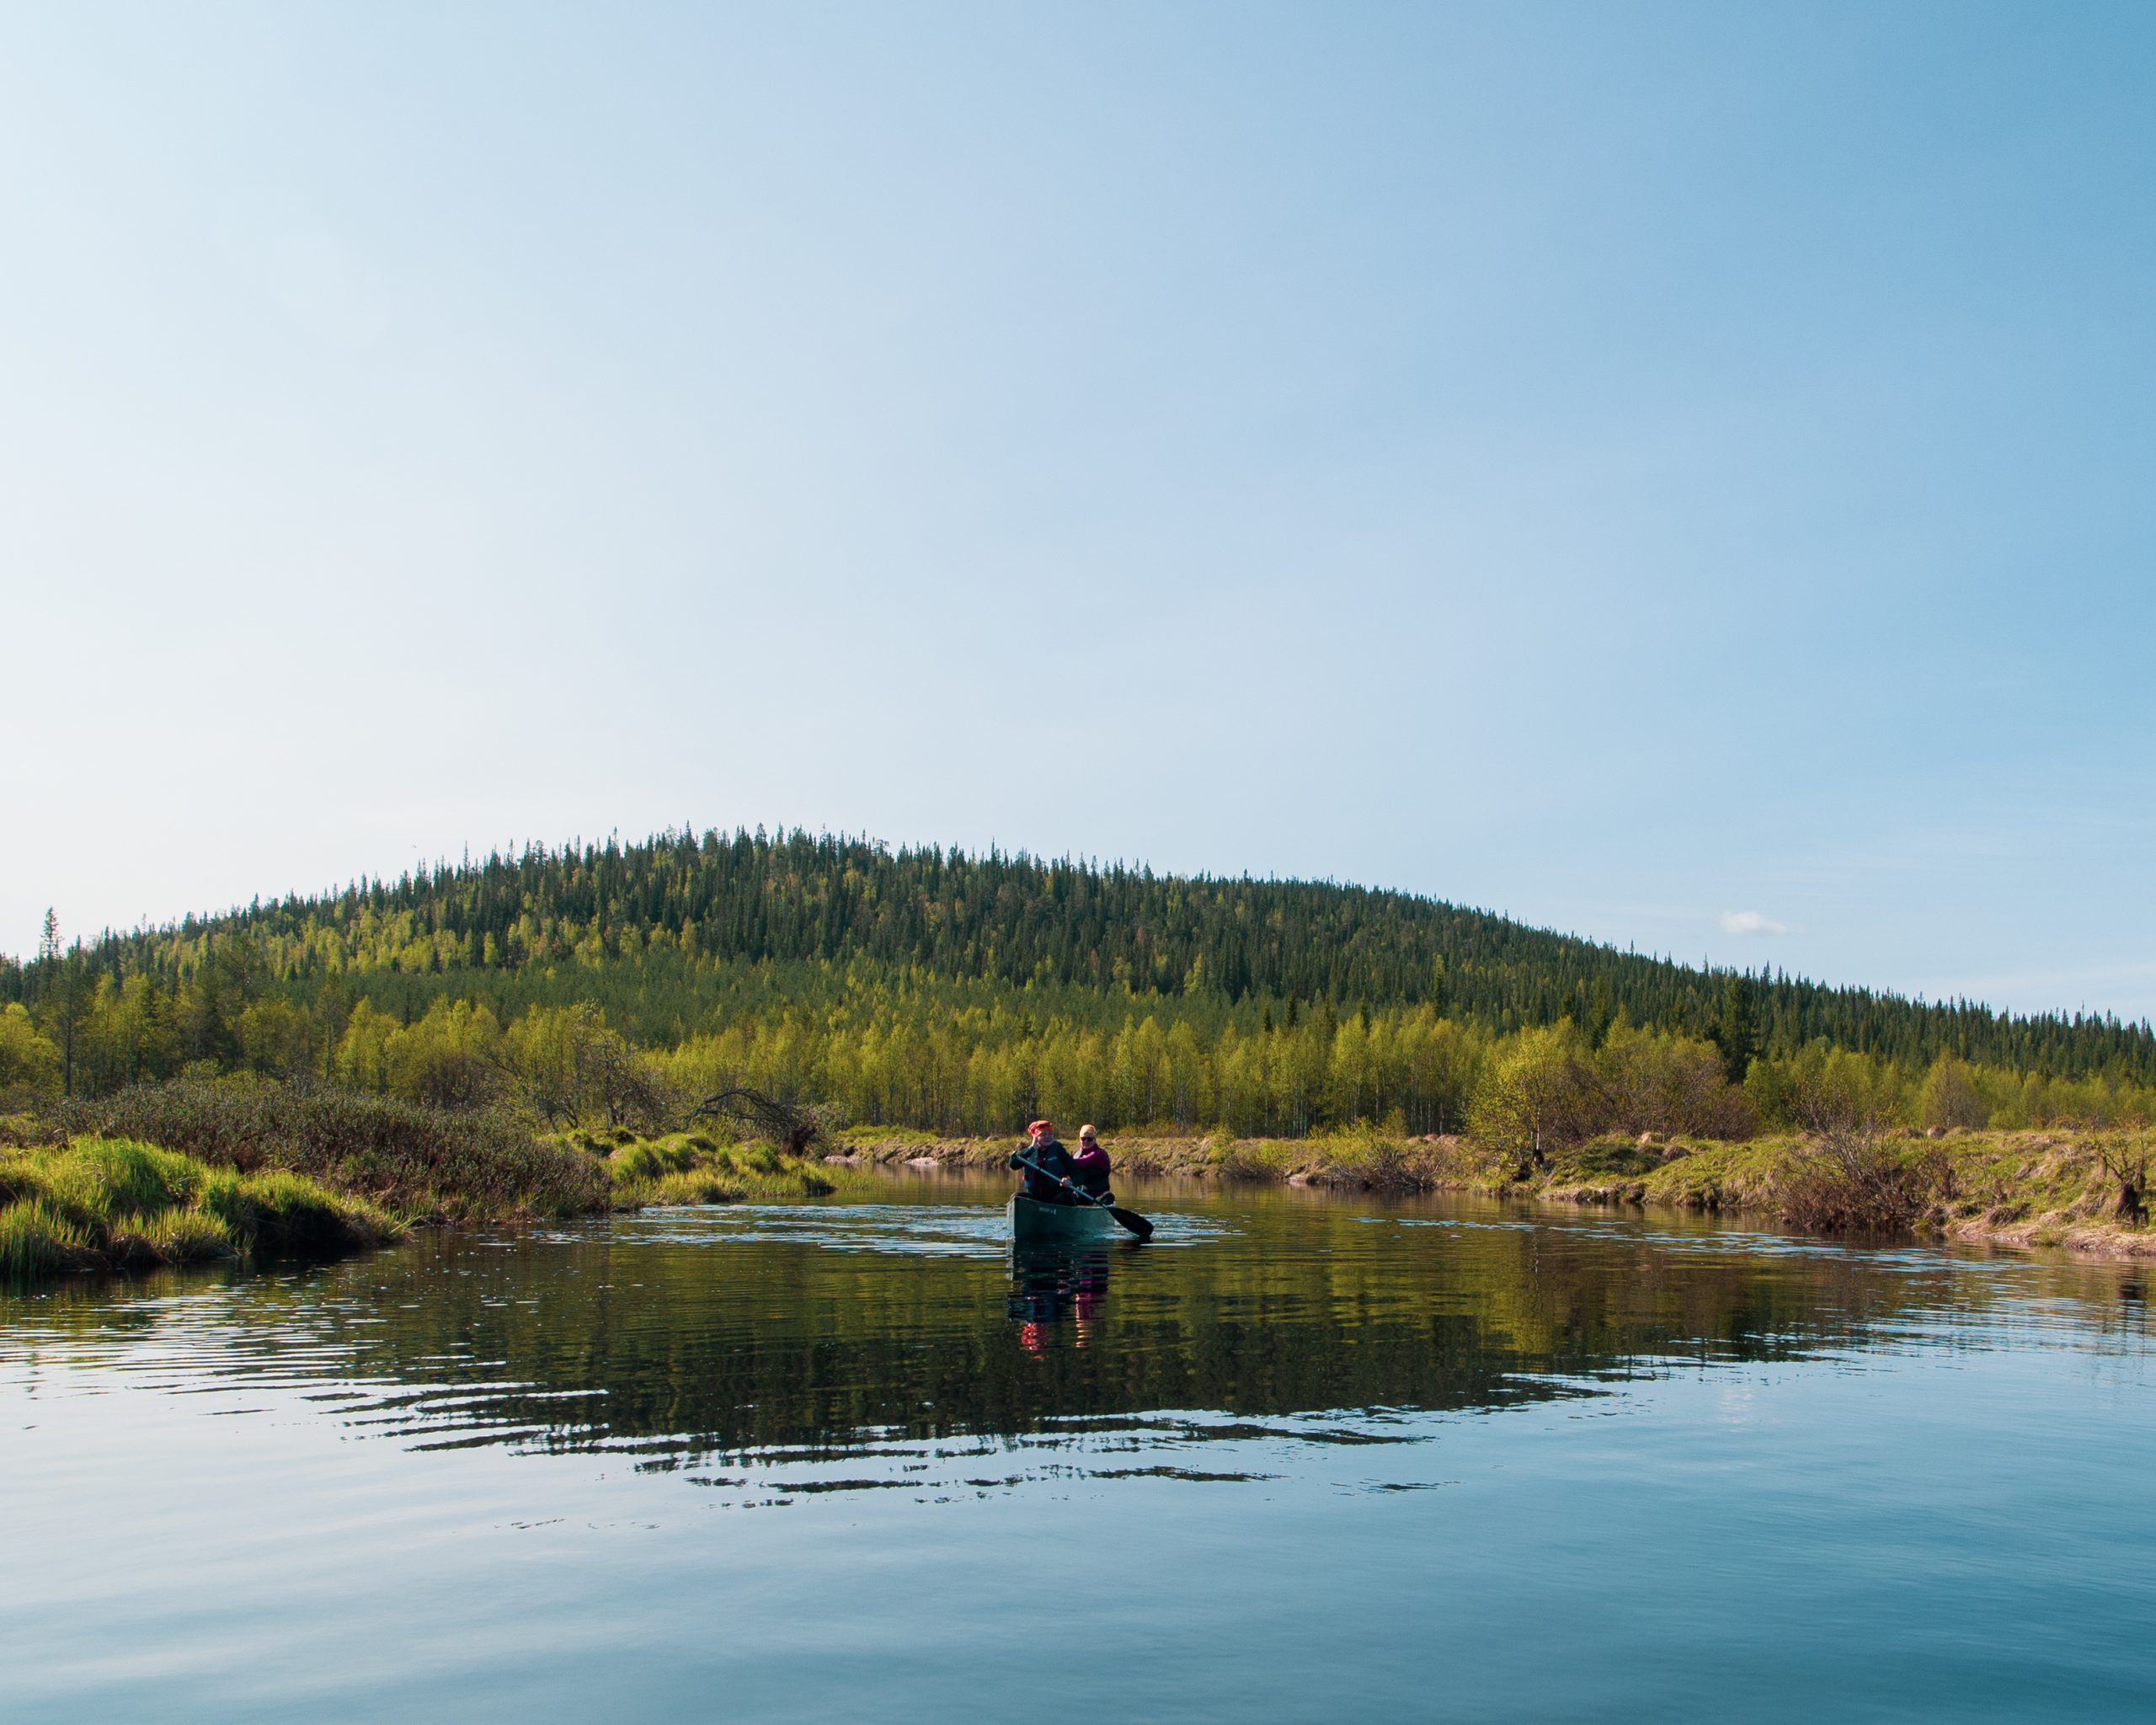 Two kayakers paddling on Parjanjoki river